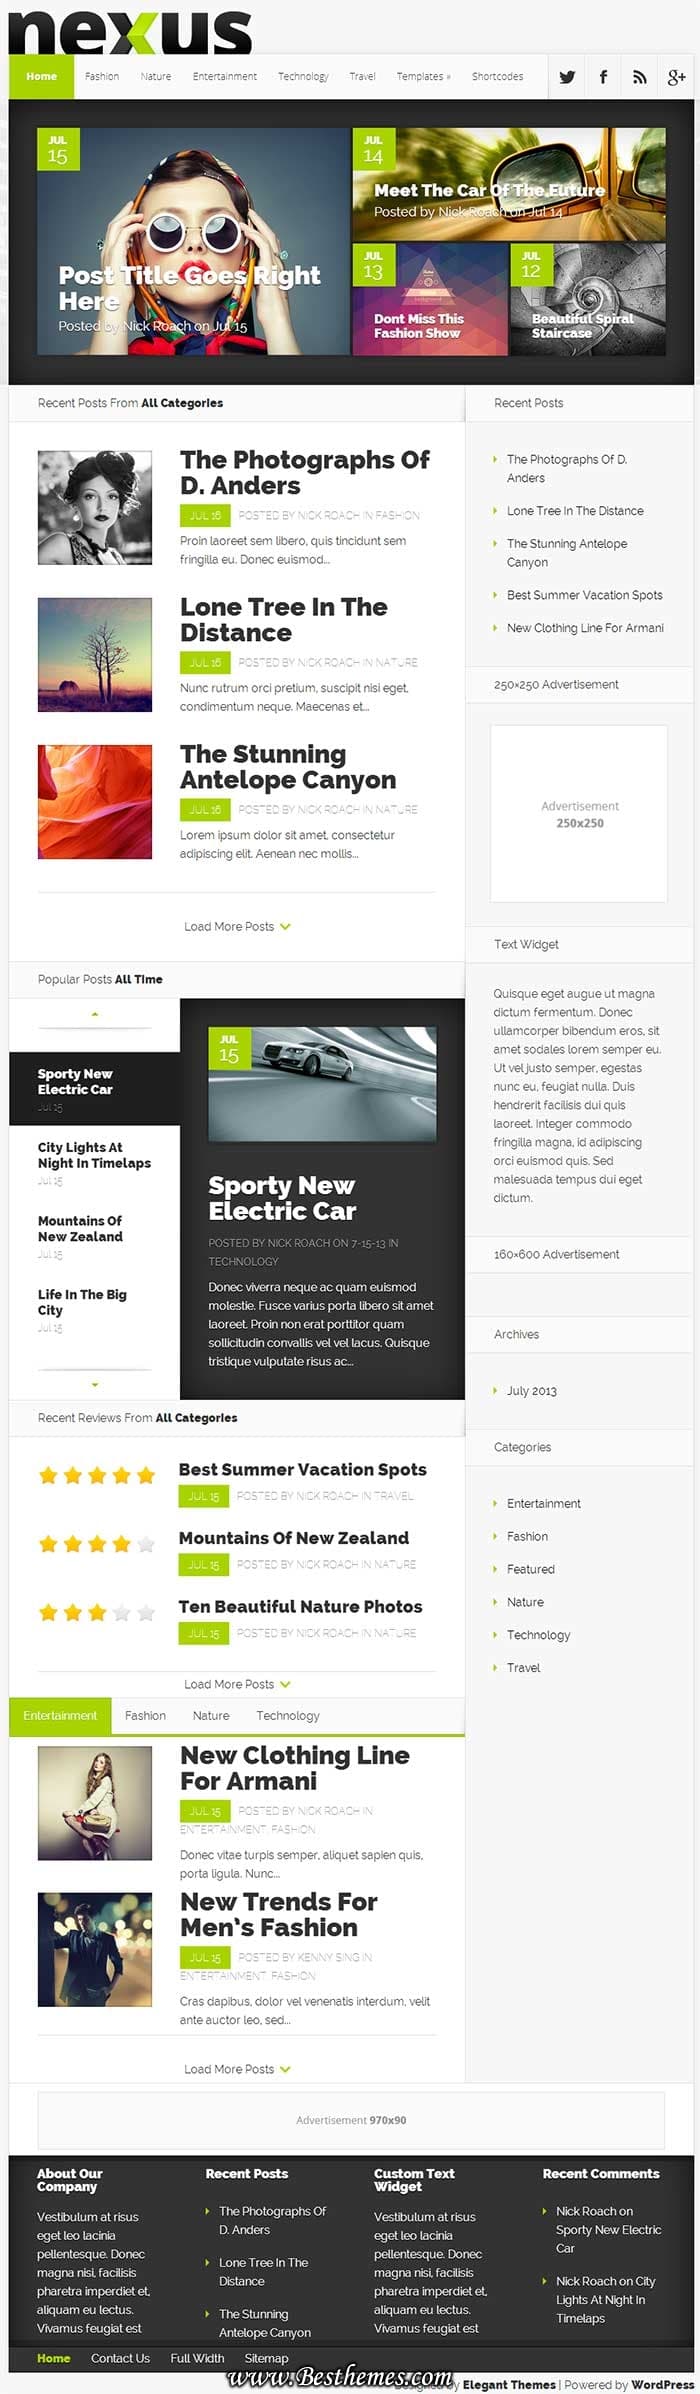 Nexus WordPress Theme, Responsive News WordPress Theme, Responsive Magazine WordPress Theme, Responsive Review WordPress Theme, Product rating WordPress Theme